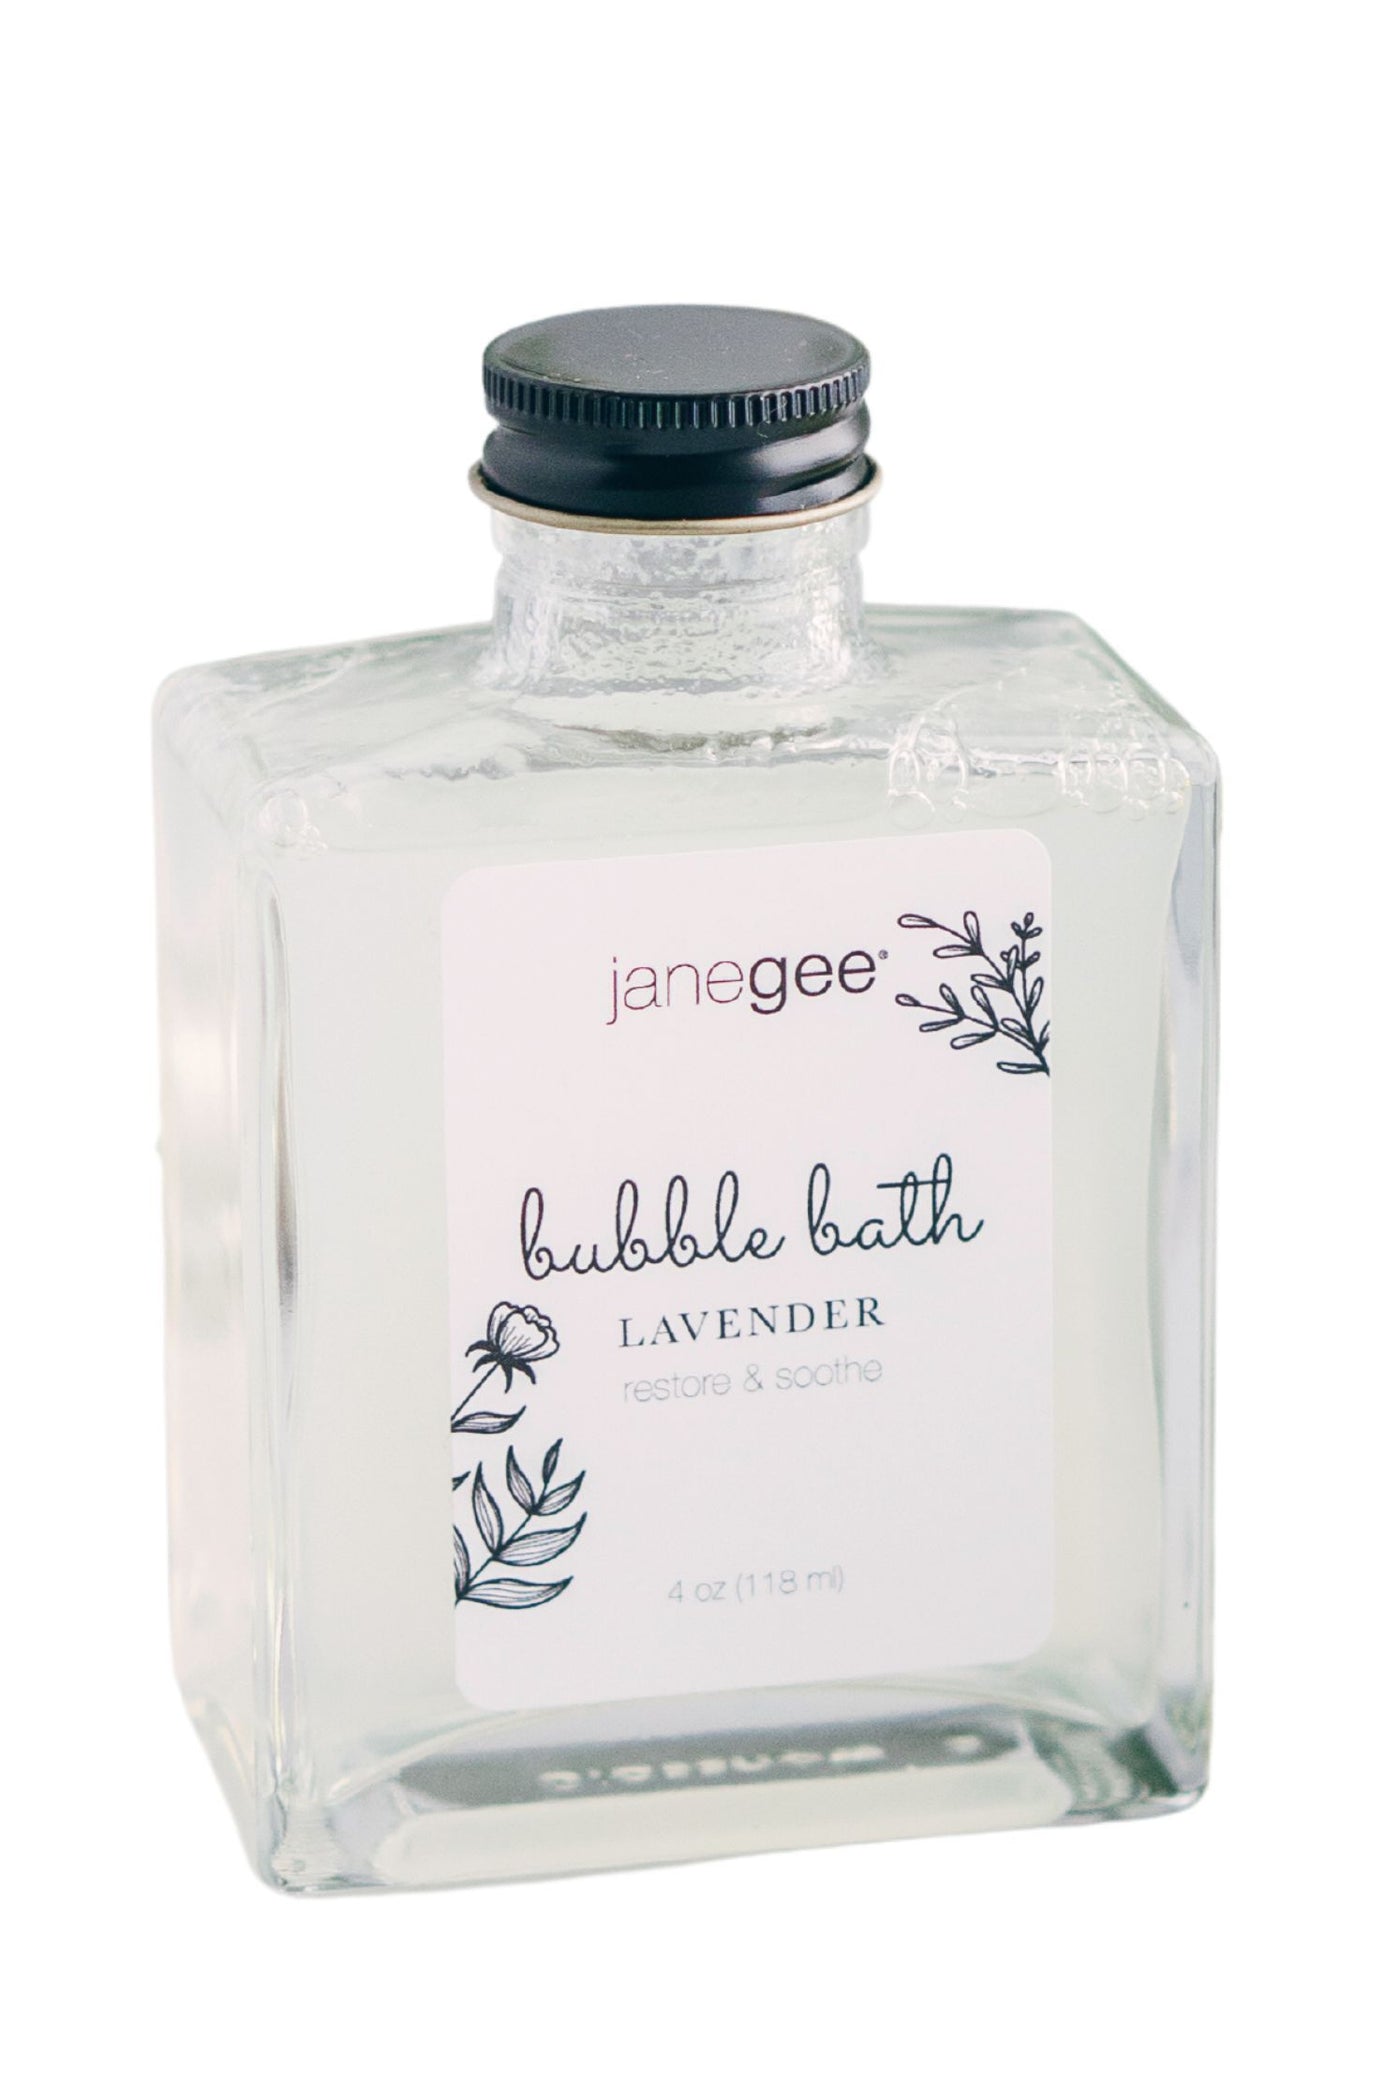 janegee Lavender Bubble Bath (4oz)